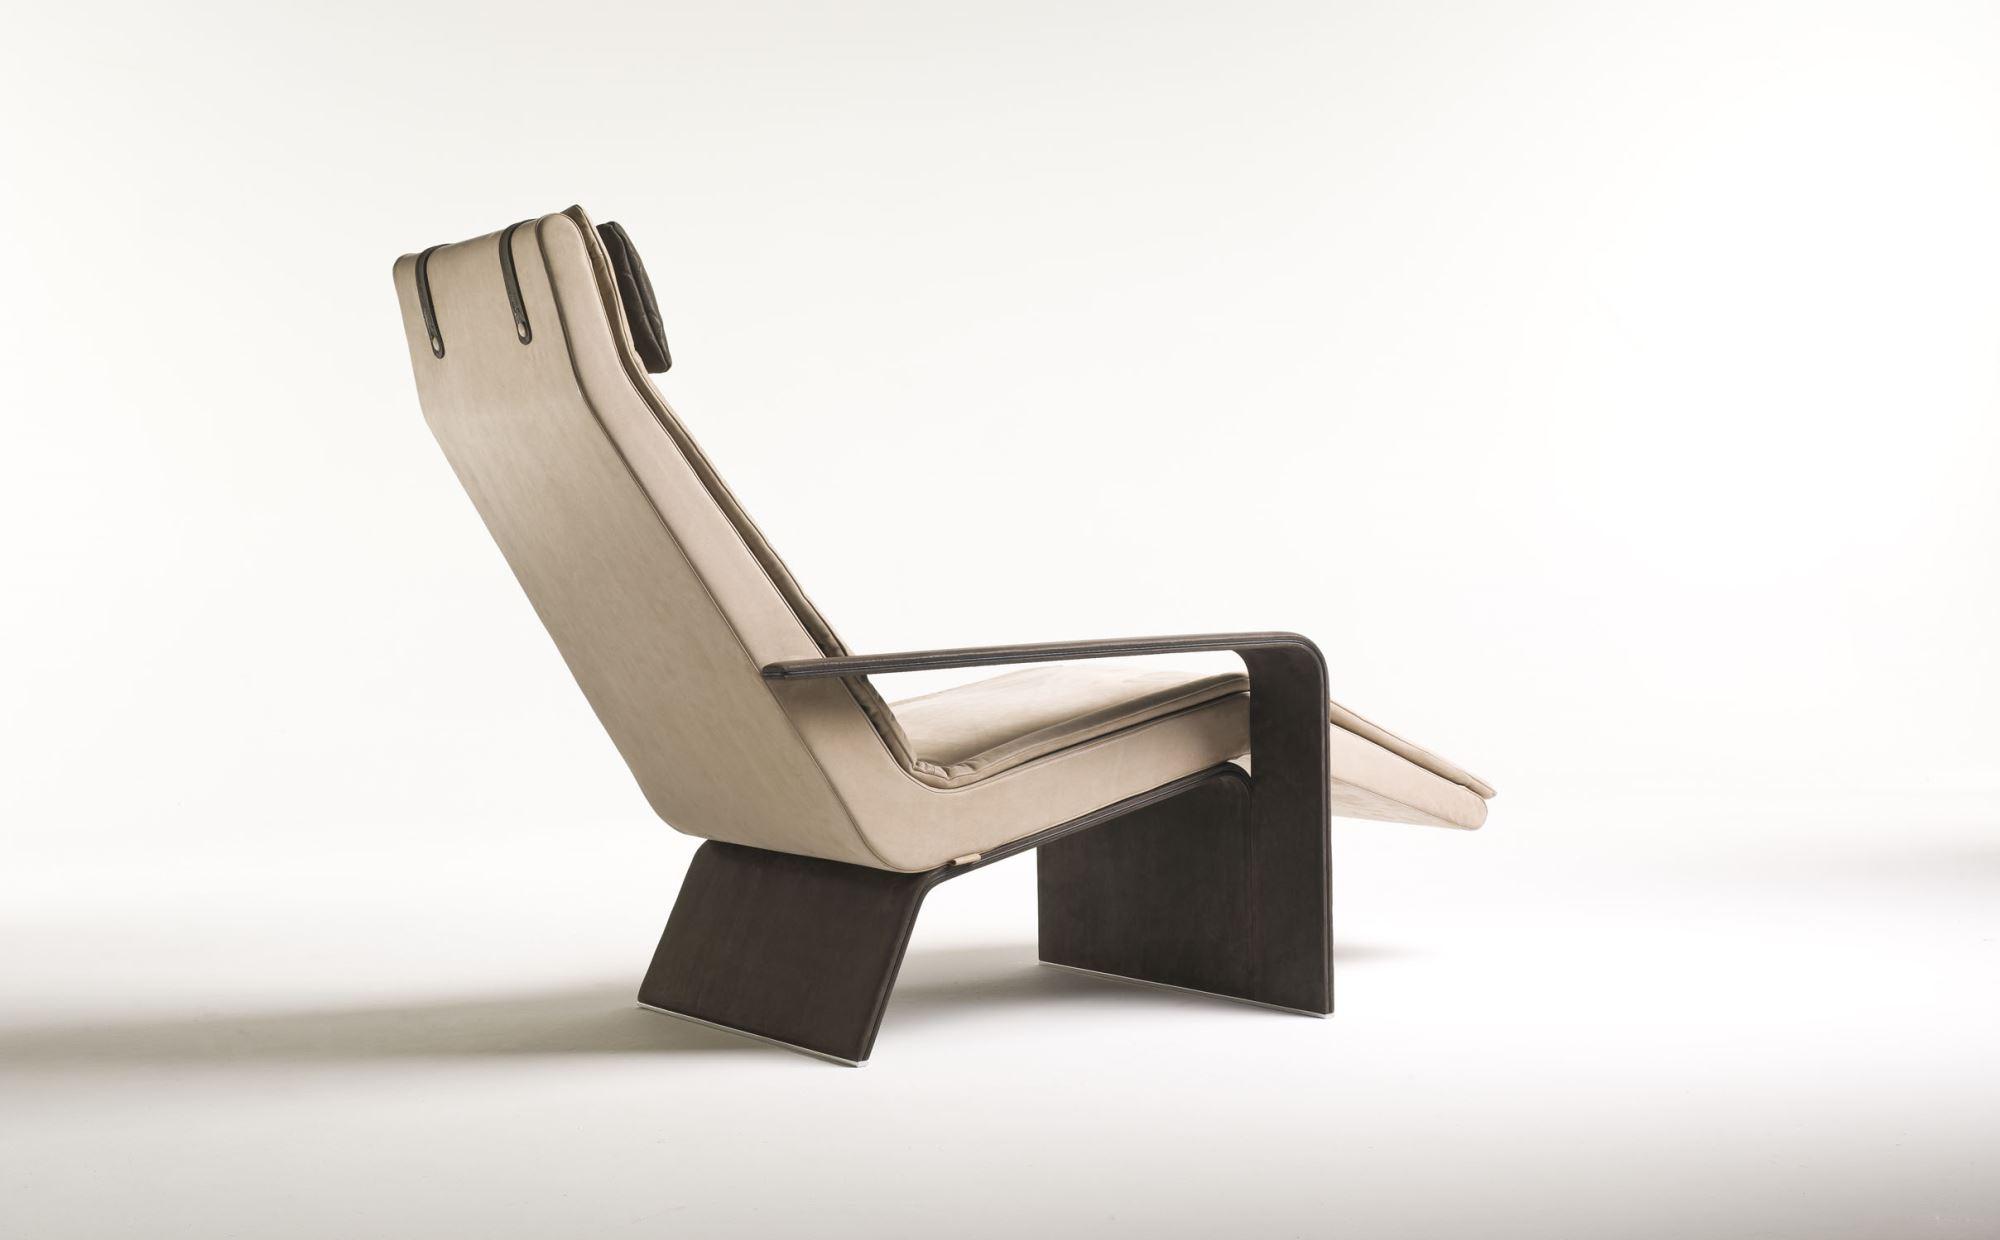 chaise longue Matteo Nunziati prezzi design moderno pelle cuoio made in italy arredamento casa ufficio on line moderno dlusso 2017 web